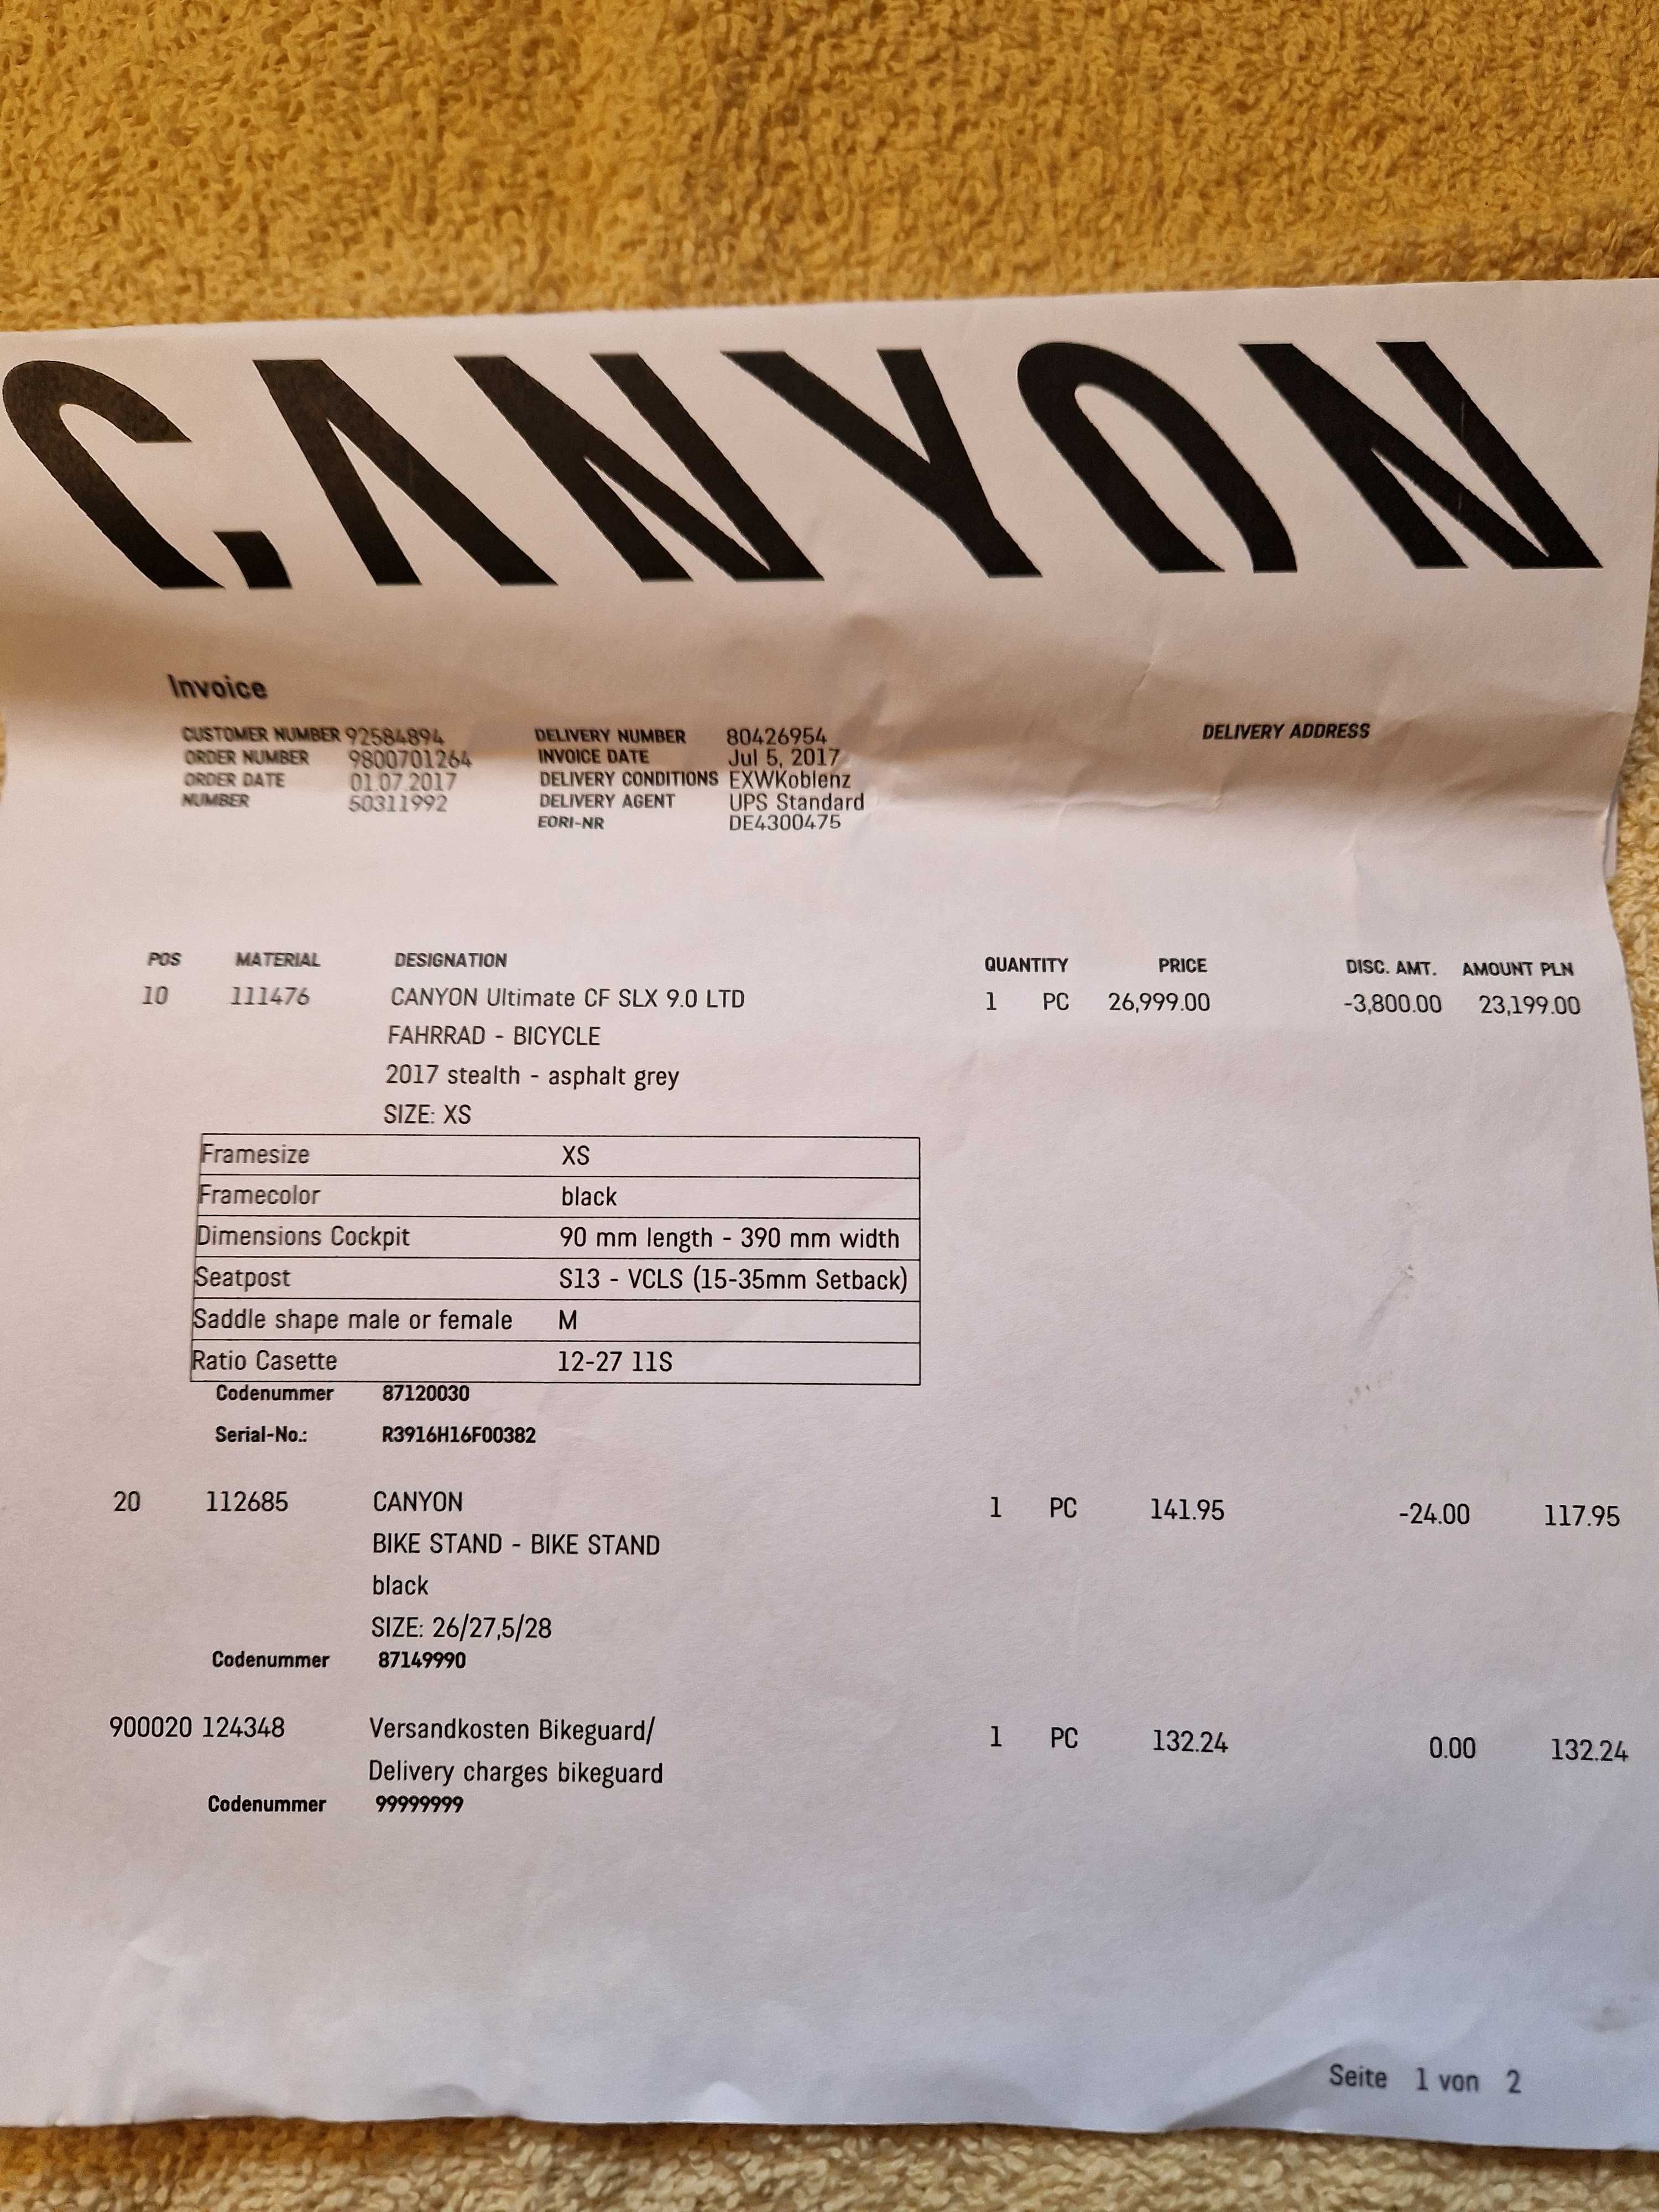 Canyon Ultimate CF SLX roz.XS, Campagnolo Super Record, Bora WTO 33